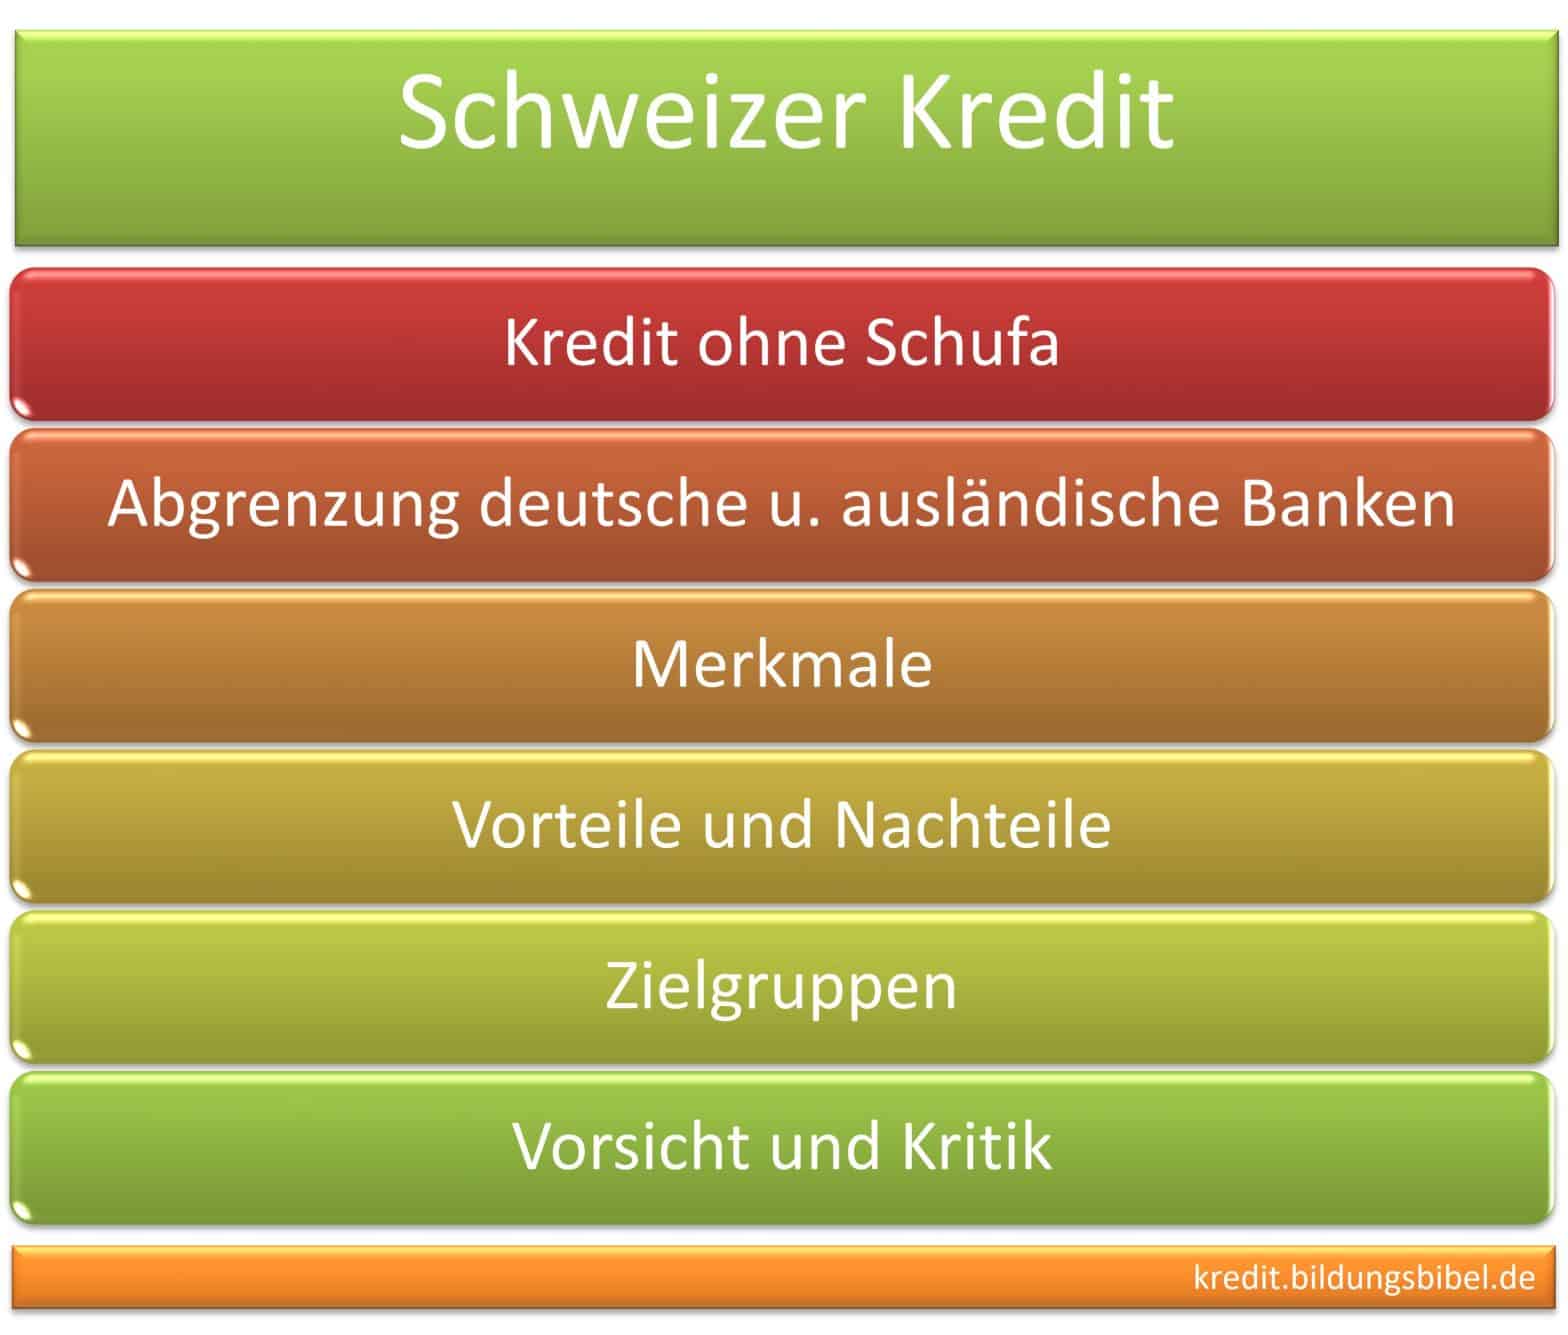 Schweizer Kredit ohne Schufa, Abgrenzung deutsche u. ausländische Banken, Merkmale, Vorteile, Nachteile sowie Zielgruppe, Vorsicht u. Kritik.